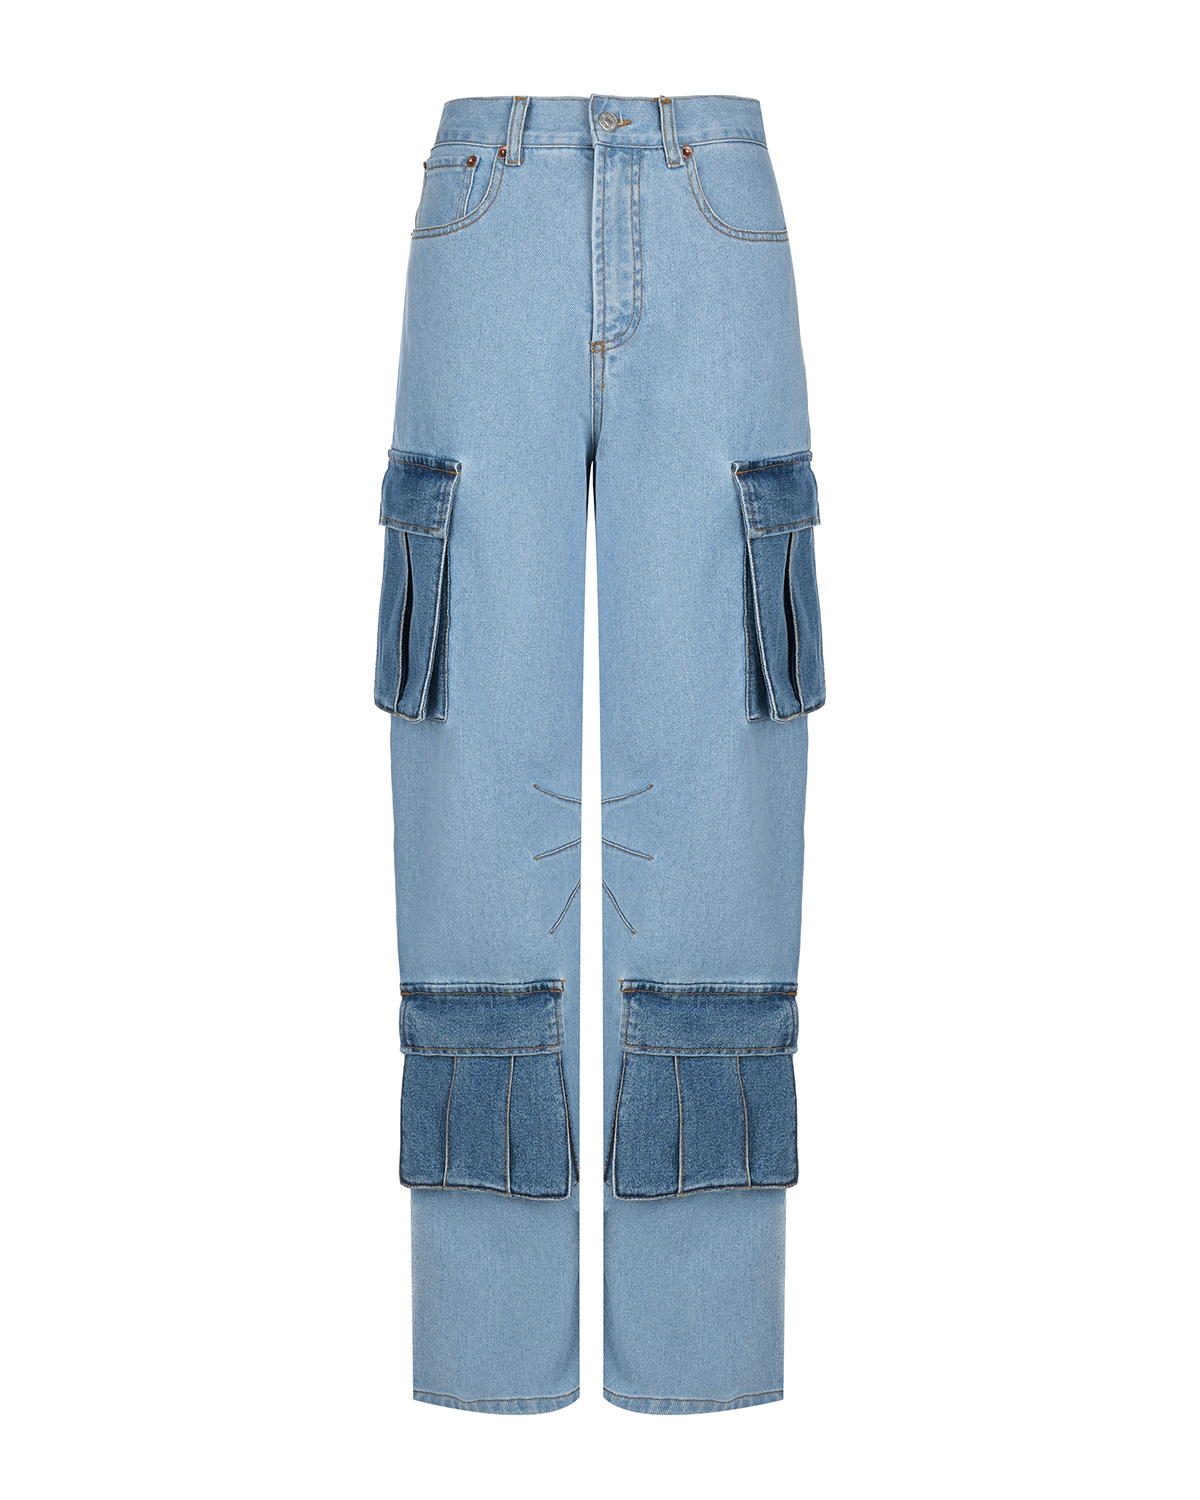 Джинсы с контрастными карманами карго Forte dei Marmi Couture джинсы с карманами карго голубые diesel